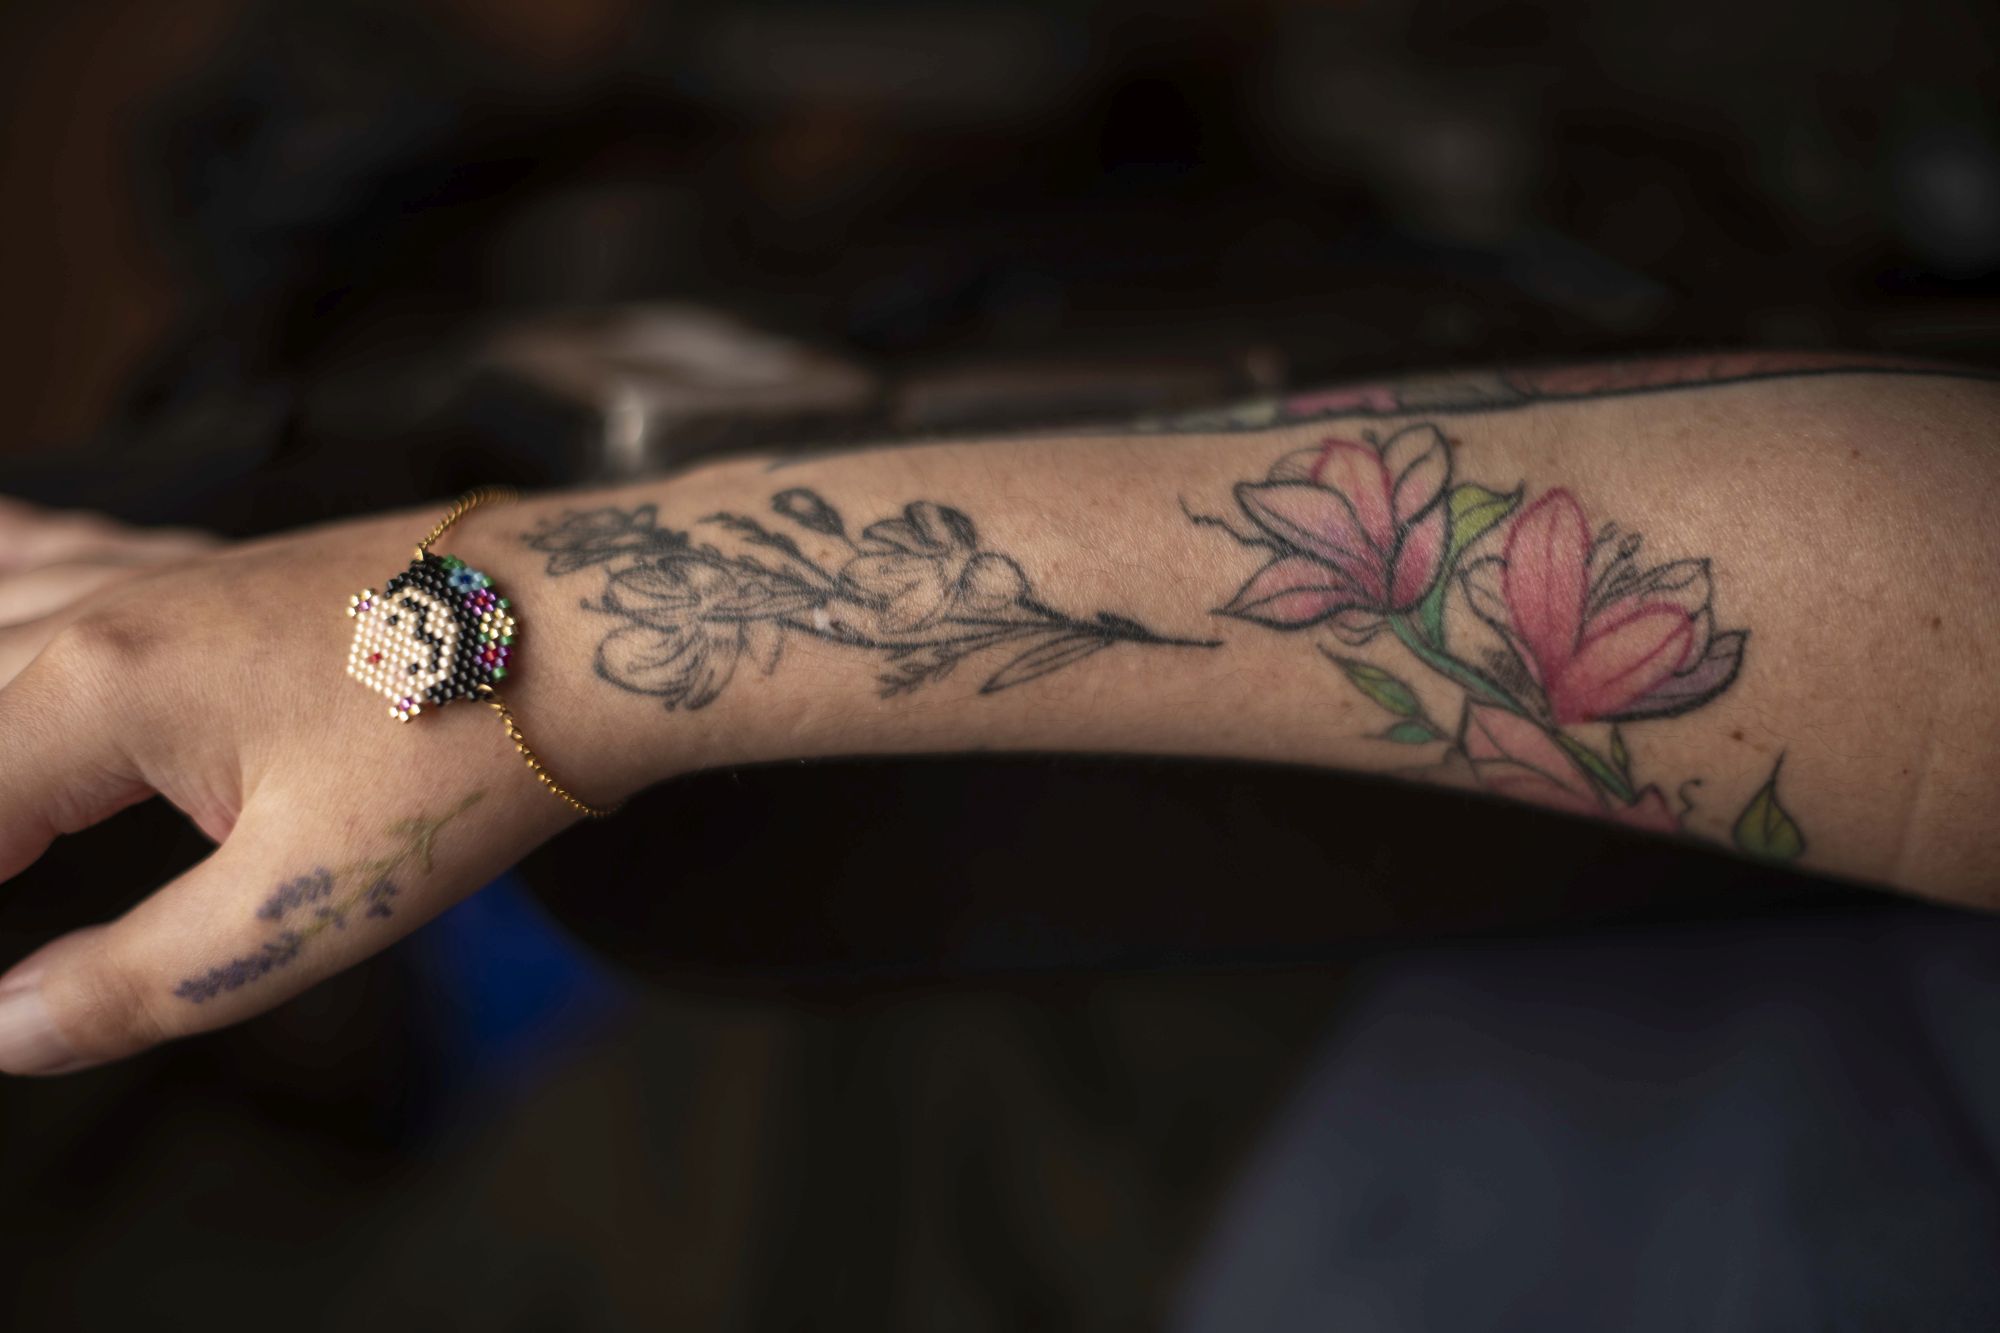 Los tatuajes en el brazo derecho de Ana Estrada. El limitado movimiento de sus dedos le permiten escribir manipulando un mouse. Mientras aguarda sentencia para su caso, hace lo que antes no podía: asistir a talleres literarios por Zoom. (Elías Alfageme)